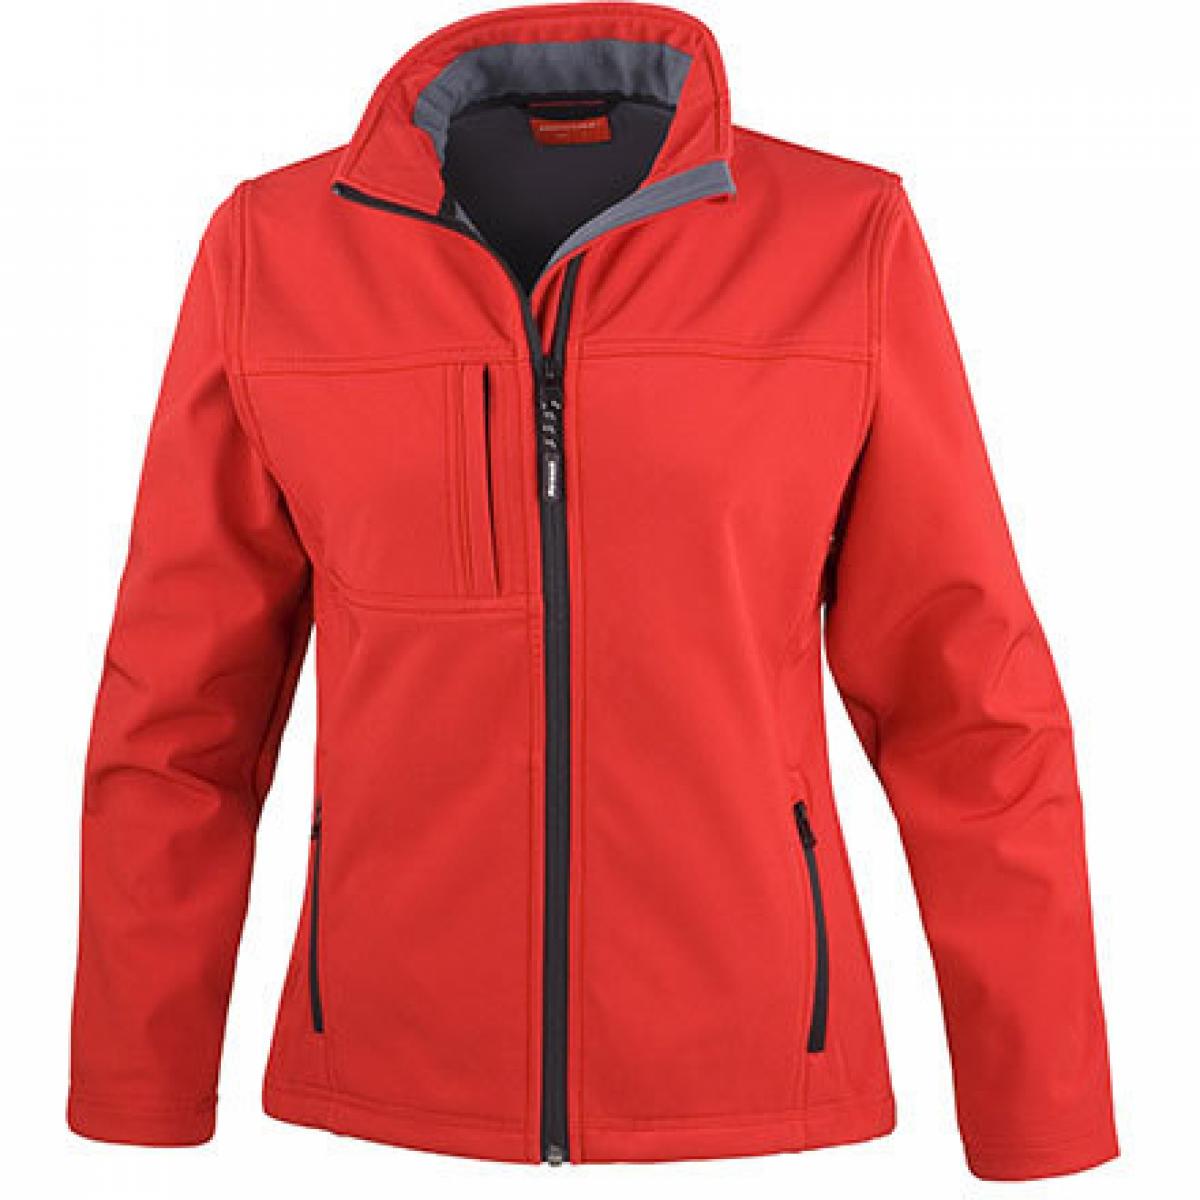 Hersteller: Result Herstellernummer: R121F Artikelbezeichnung: Ladies Classic Soft Shell Jacket Farbe: Red